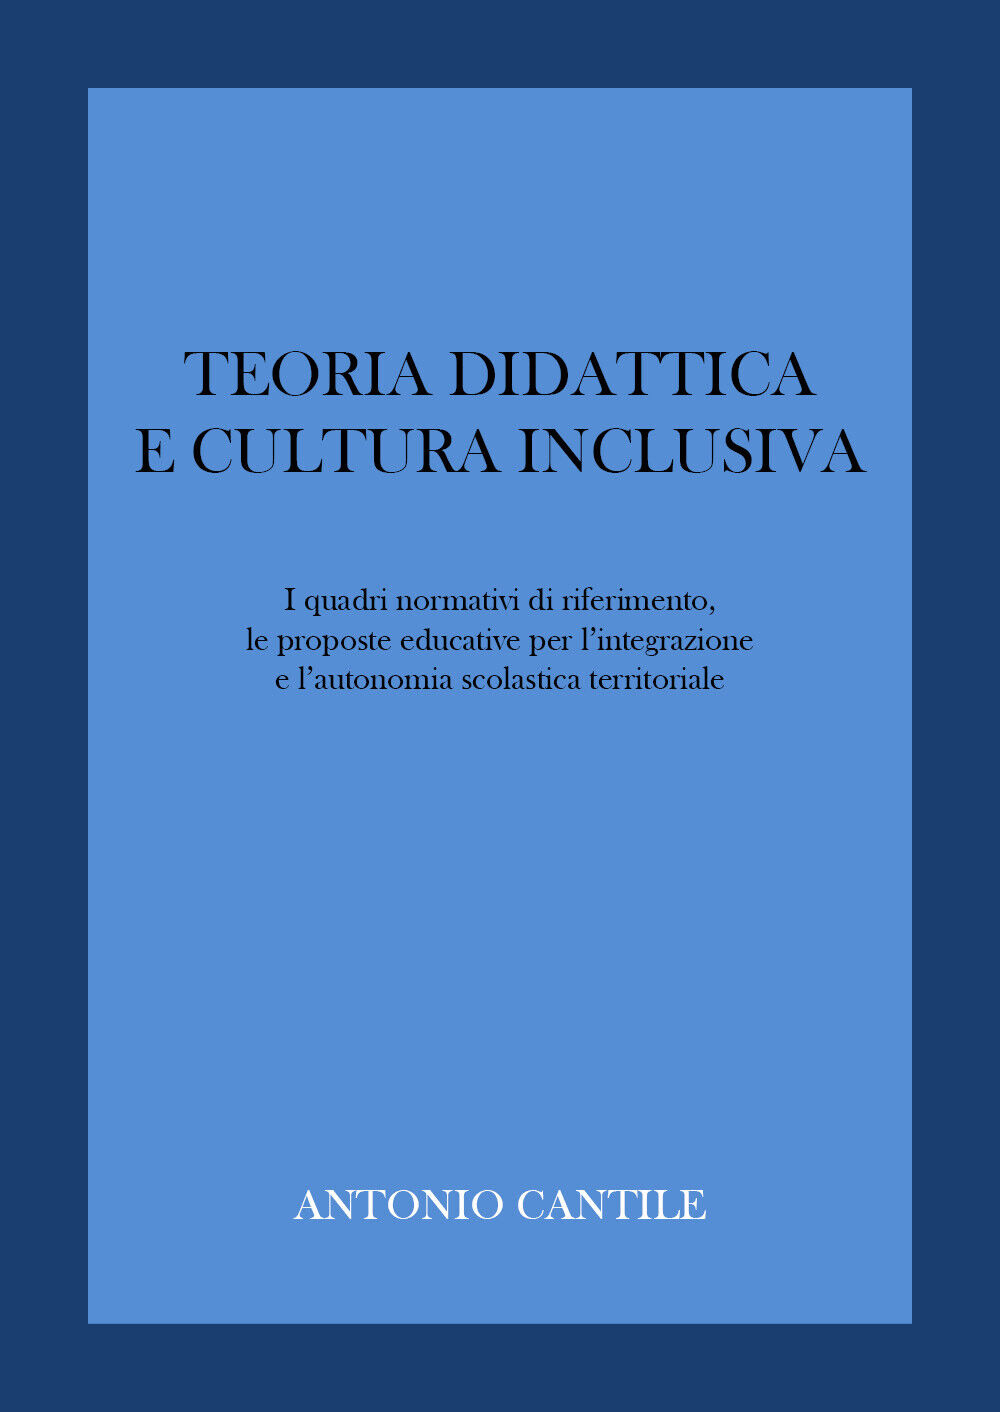 Teoria didattica e cultura inclusiva di Antonio Cantile,  2022,  Youcanprint